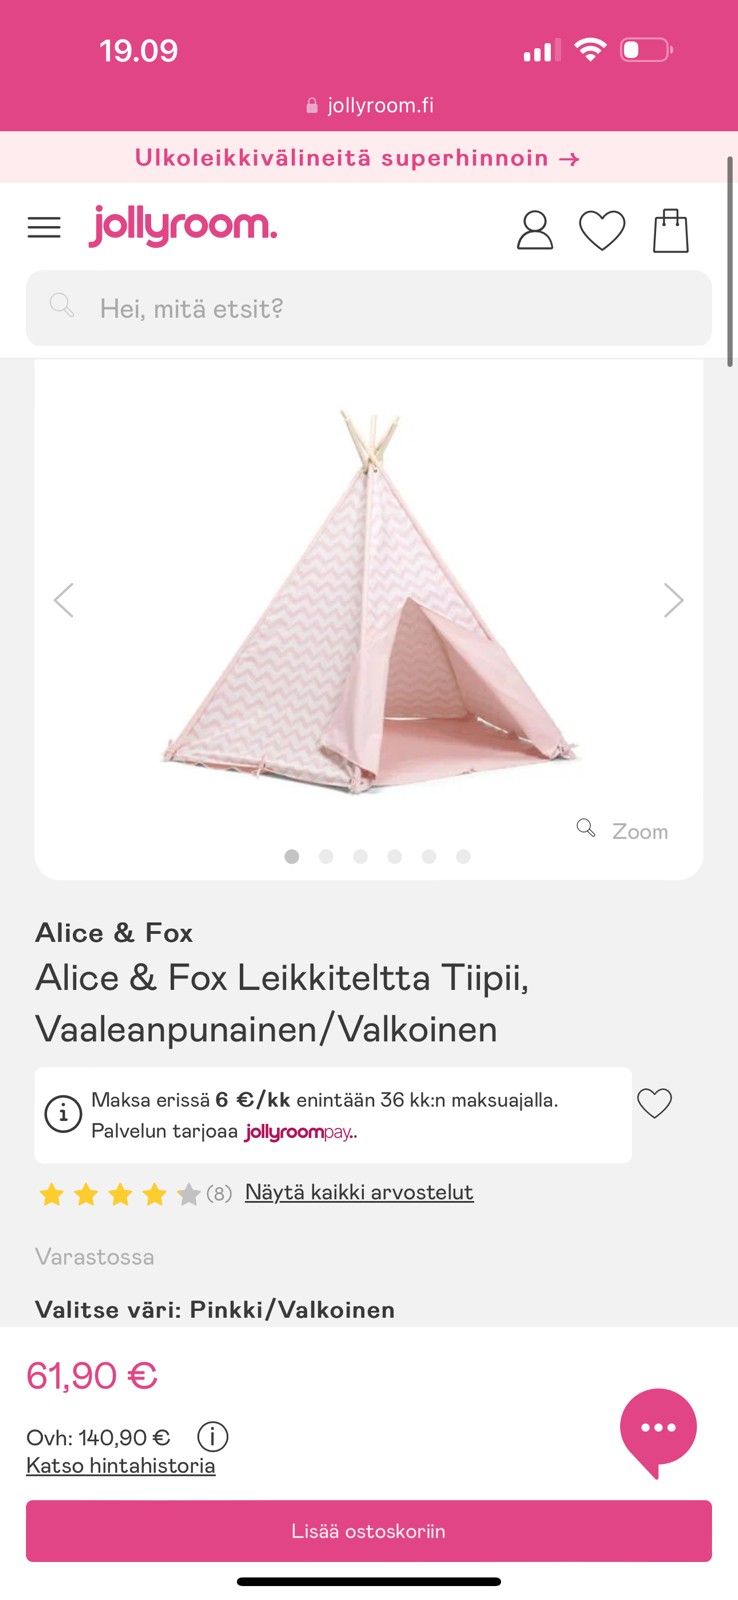 Alice & Fox Leikkiteltta Tiipii, Vaaleanpunainen/Valkoinen